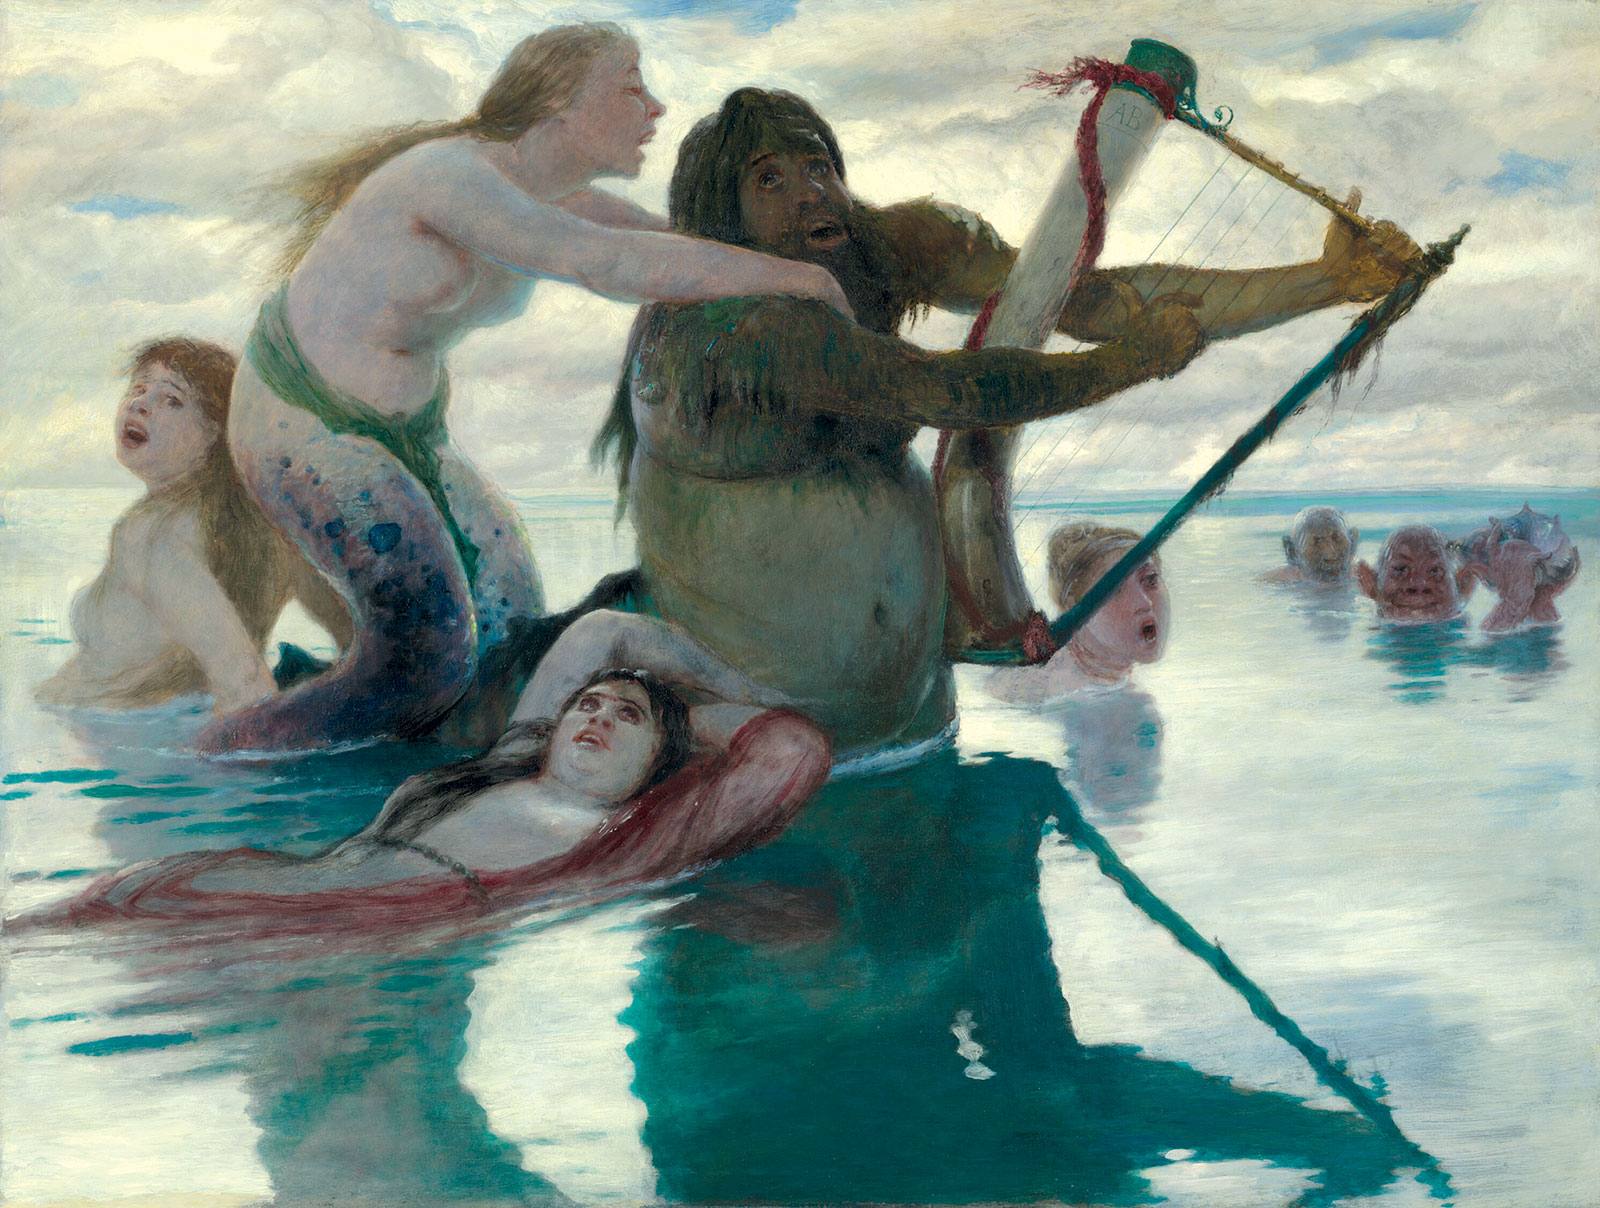 Arnold Böcklin, *En el mar*, 1883. Art Institute Chicago